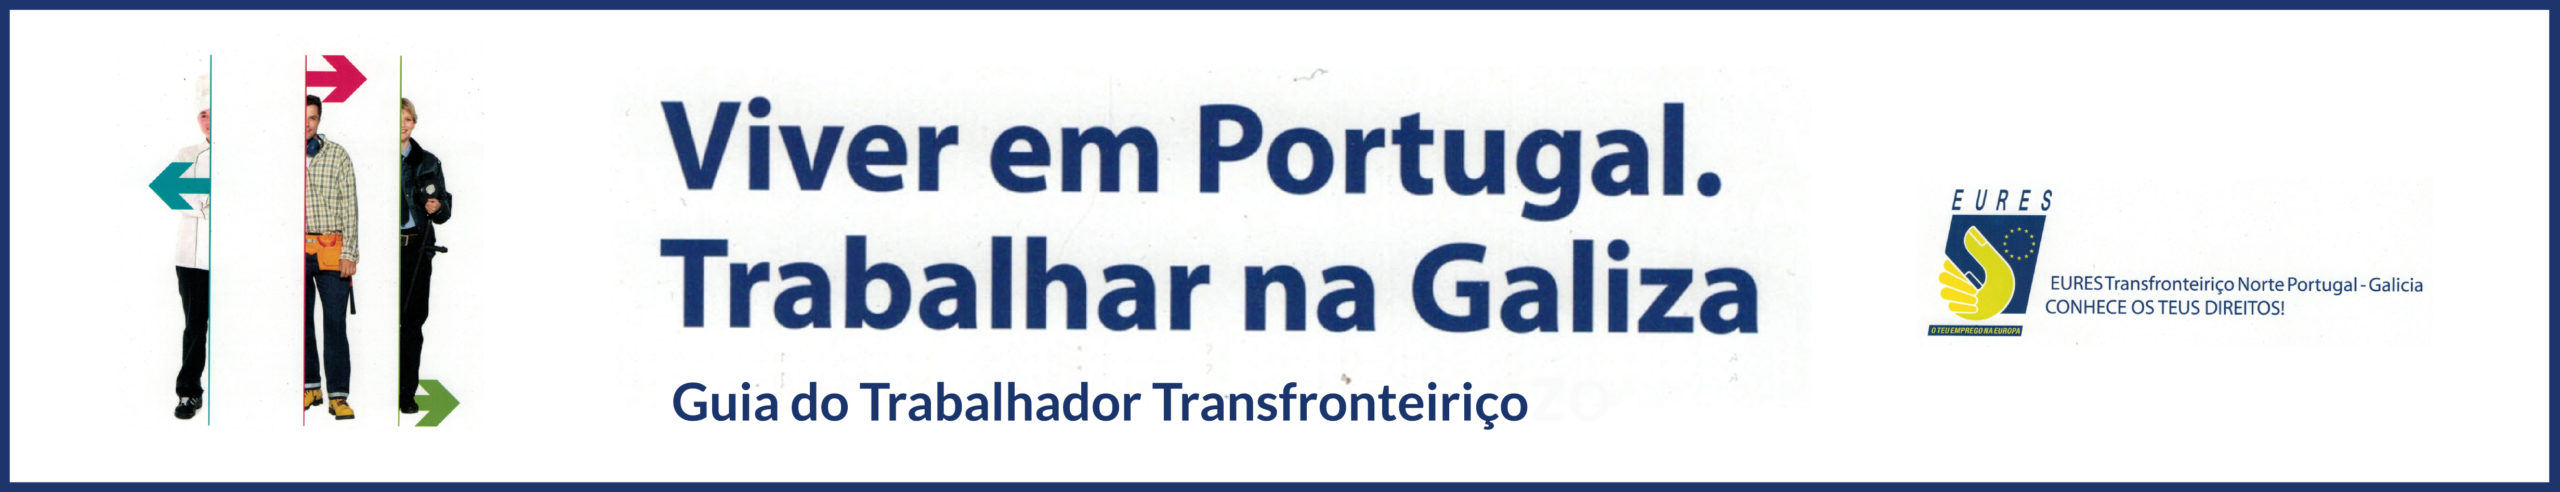 VIVER em PORTUGAL e TRABALHAR na GALIZA: Guia do Trabalhador Transfronteiriço 